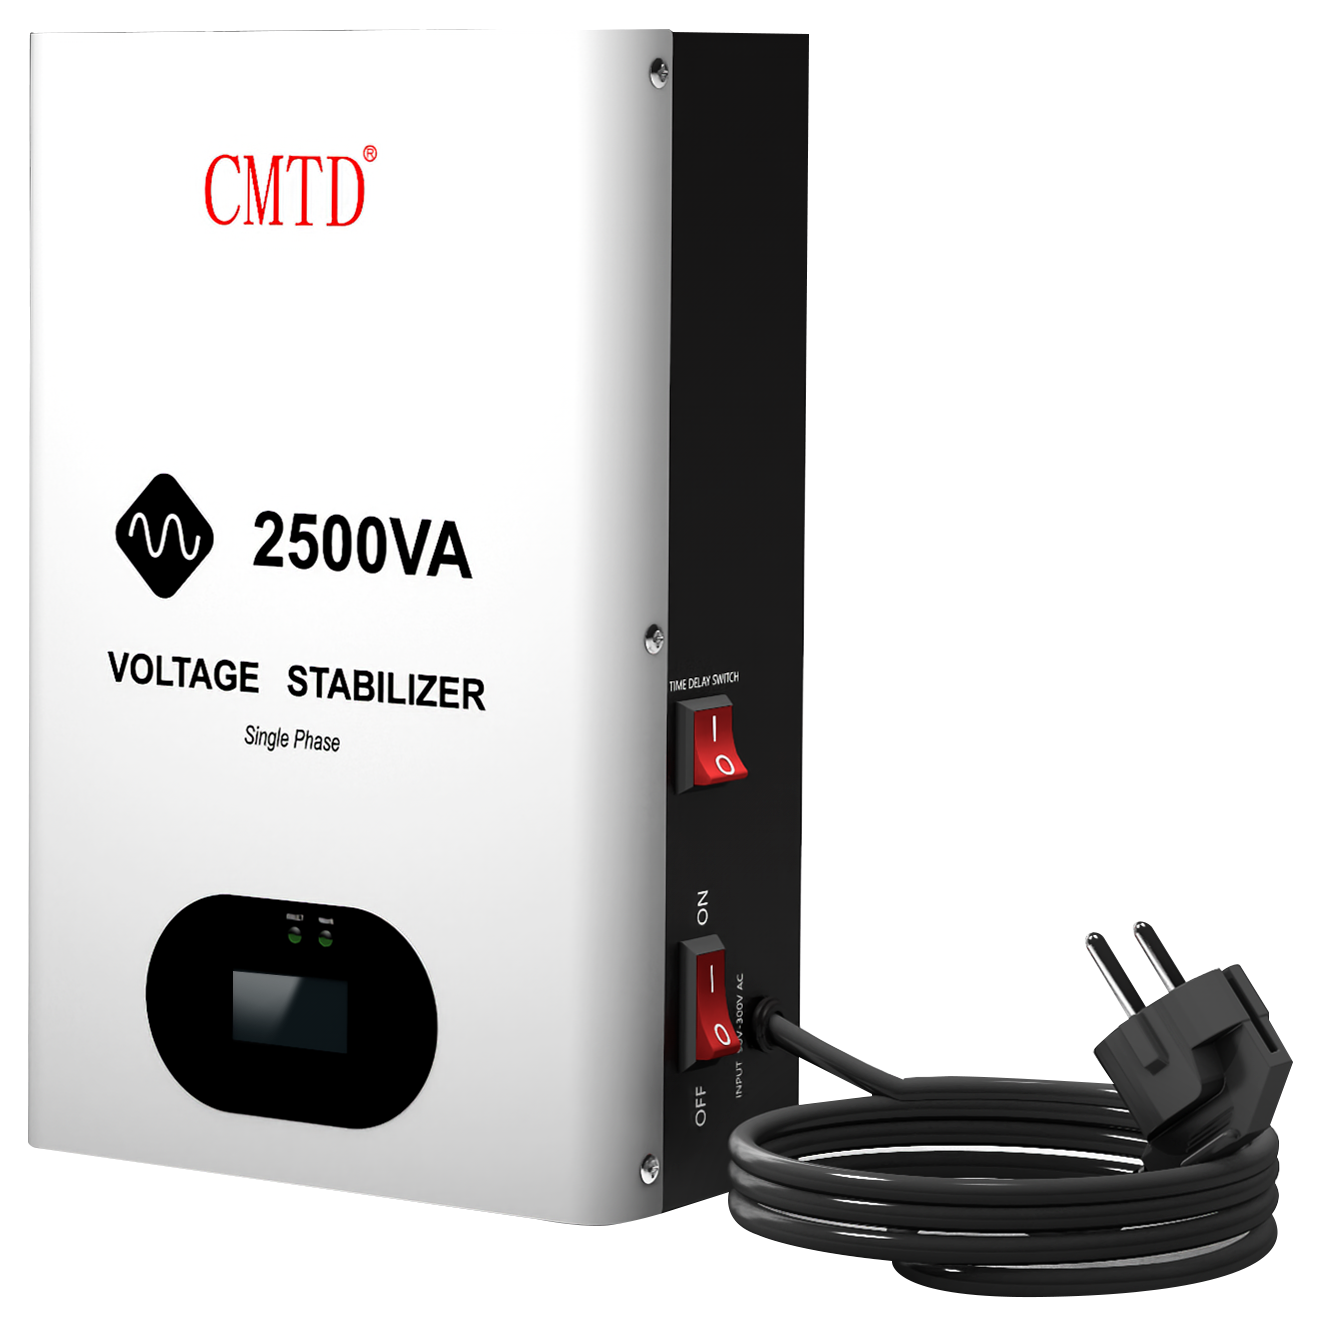 Voltage Stabilizer - Voltage Stabilizer